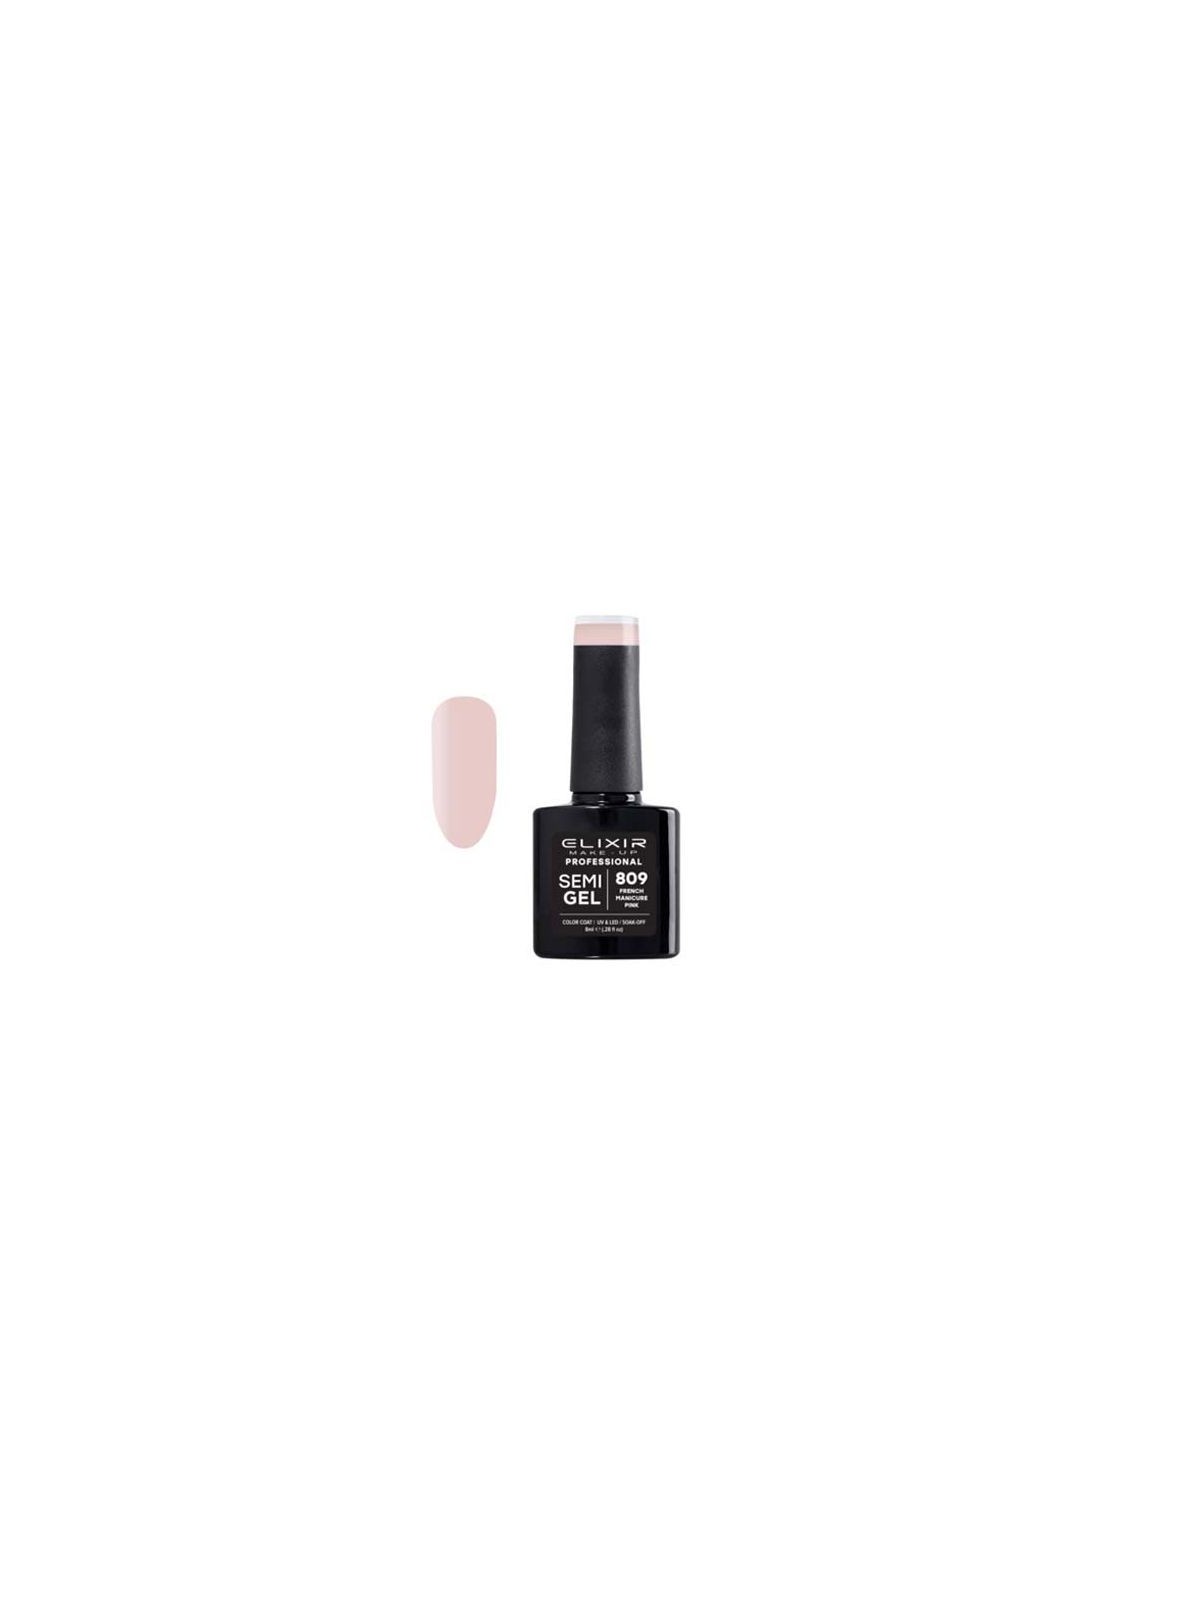 Comprar Esmalte Permanente De Uñas Elixir Semi Gel Nº 809 French Manicure Pink en Manicura por sólo 6,99 € o un precio específico de 6,99 € en Thalie Care